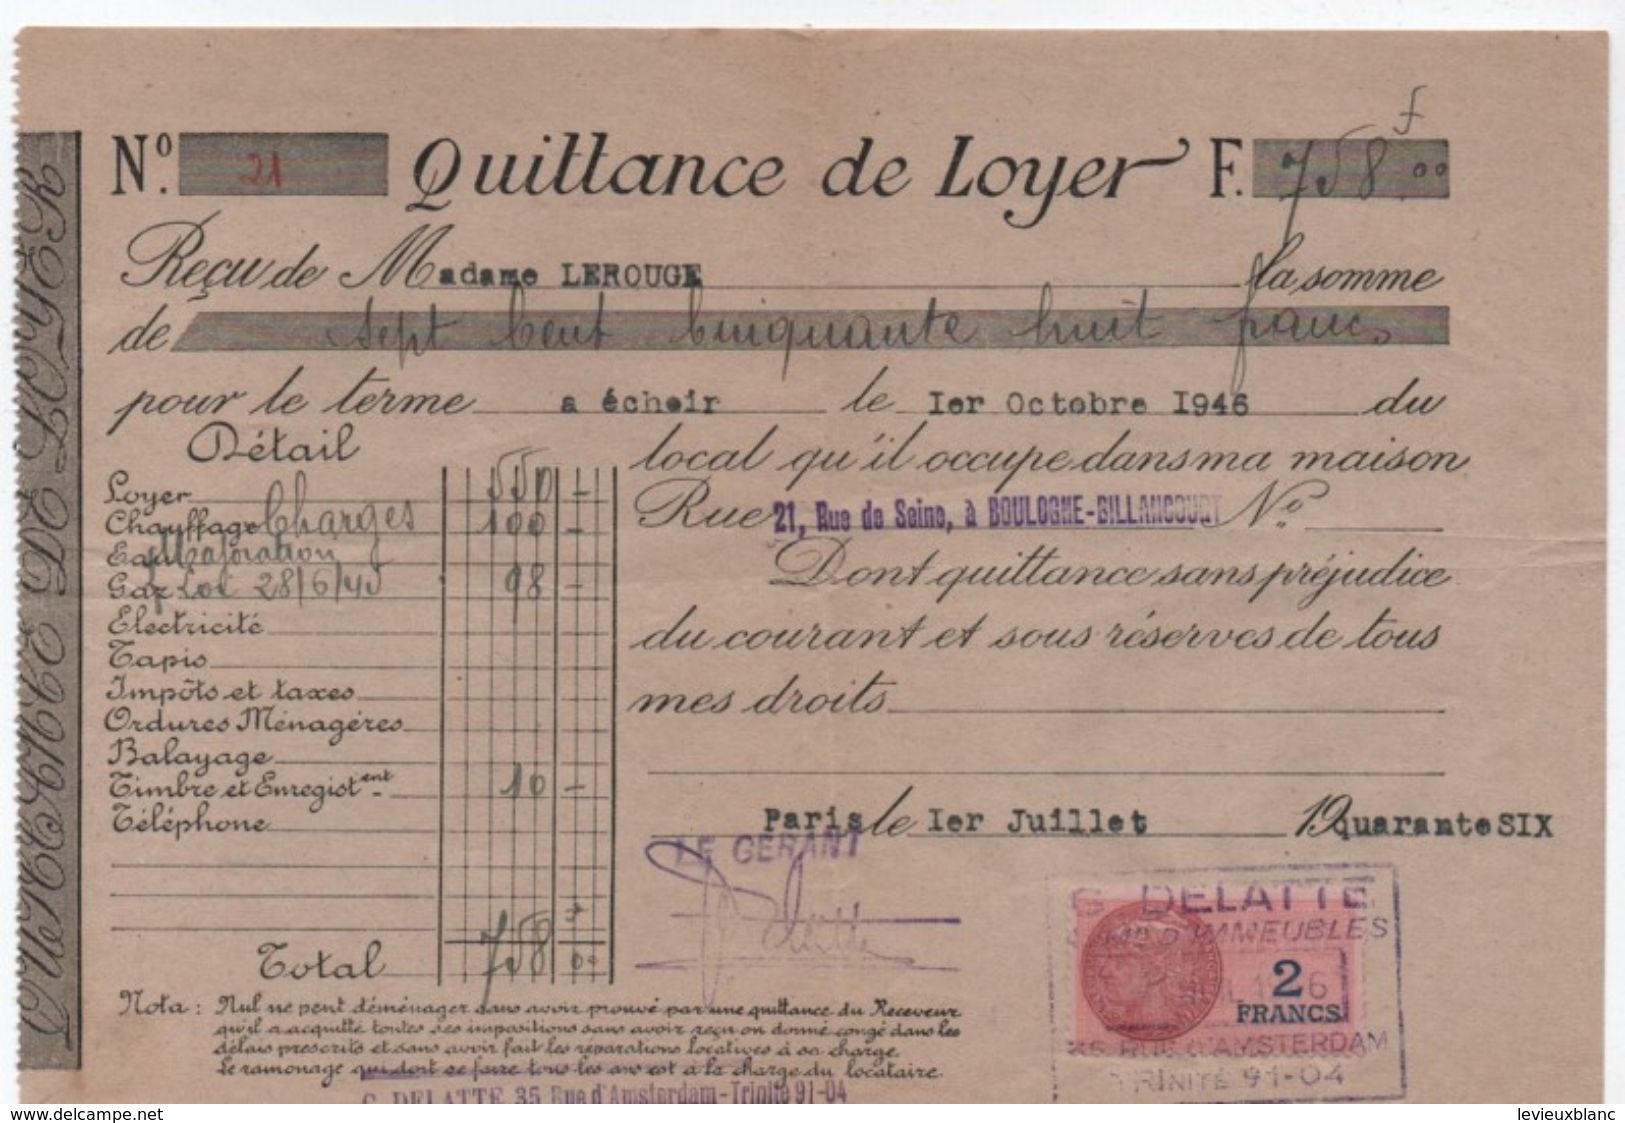 Quittance De Loyer /Reçu/Timbre Fiscal 2 Francs/ Boulogne-Billancourt/ 1946                       QUIT24 - Non Classés